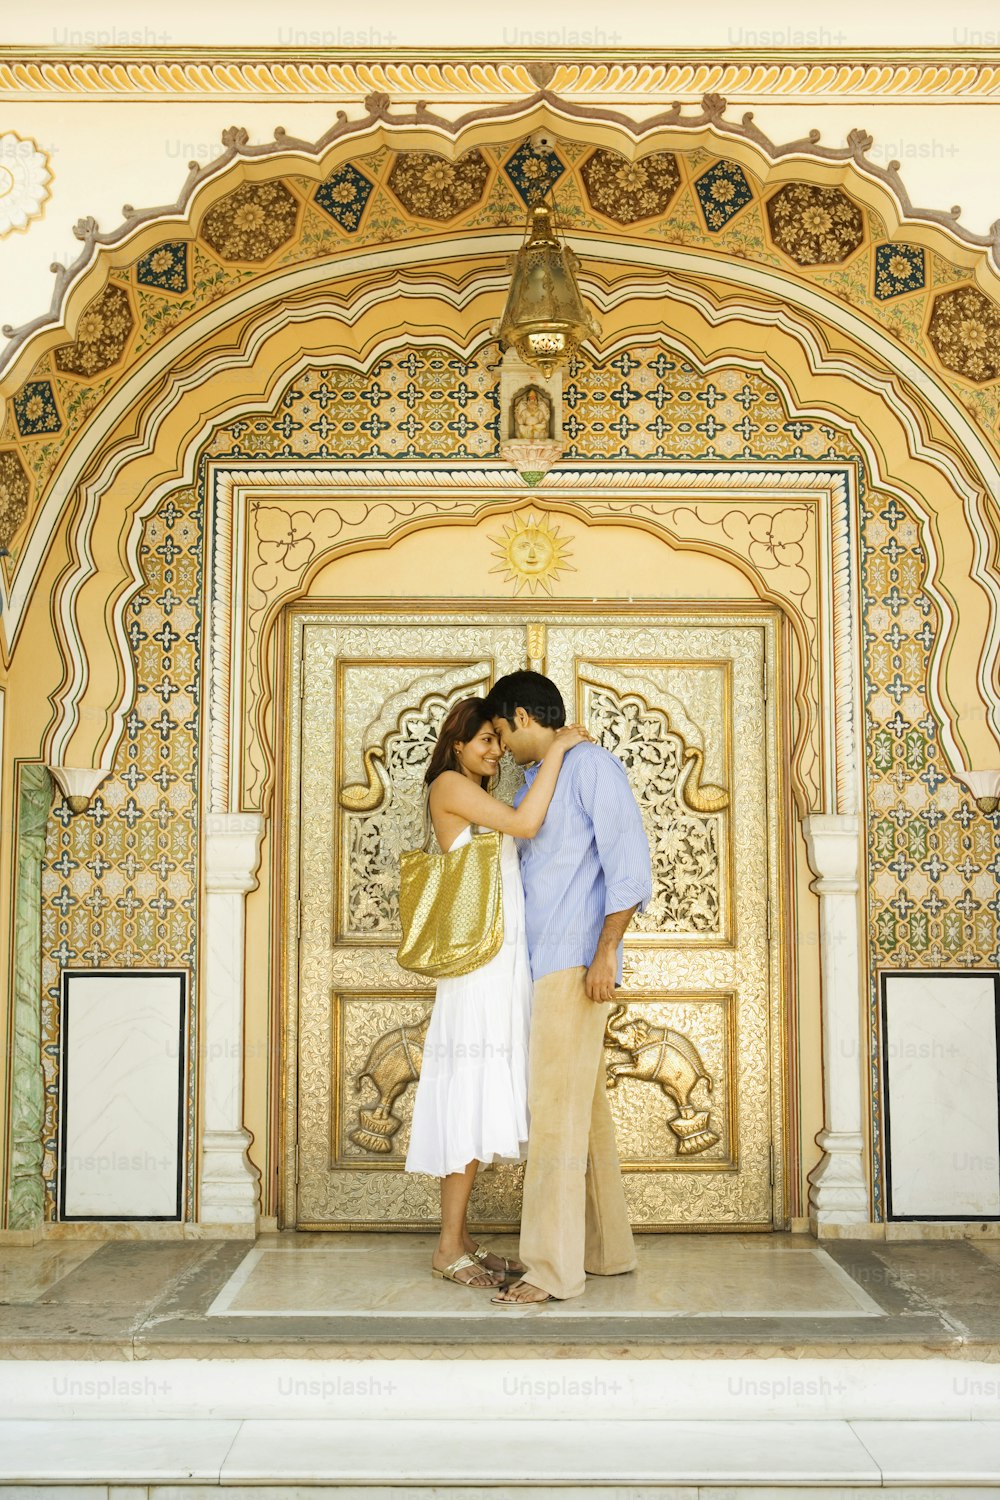 Un couple s’embrassant devant une porte dorée